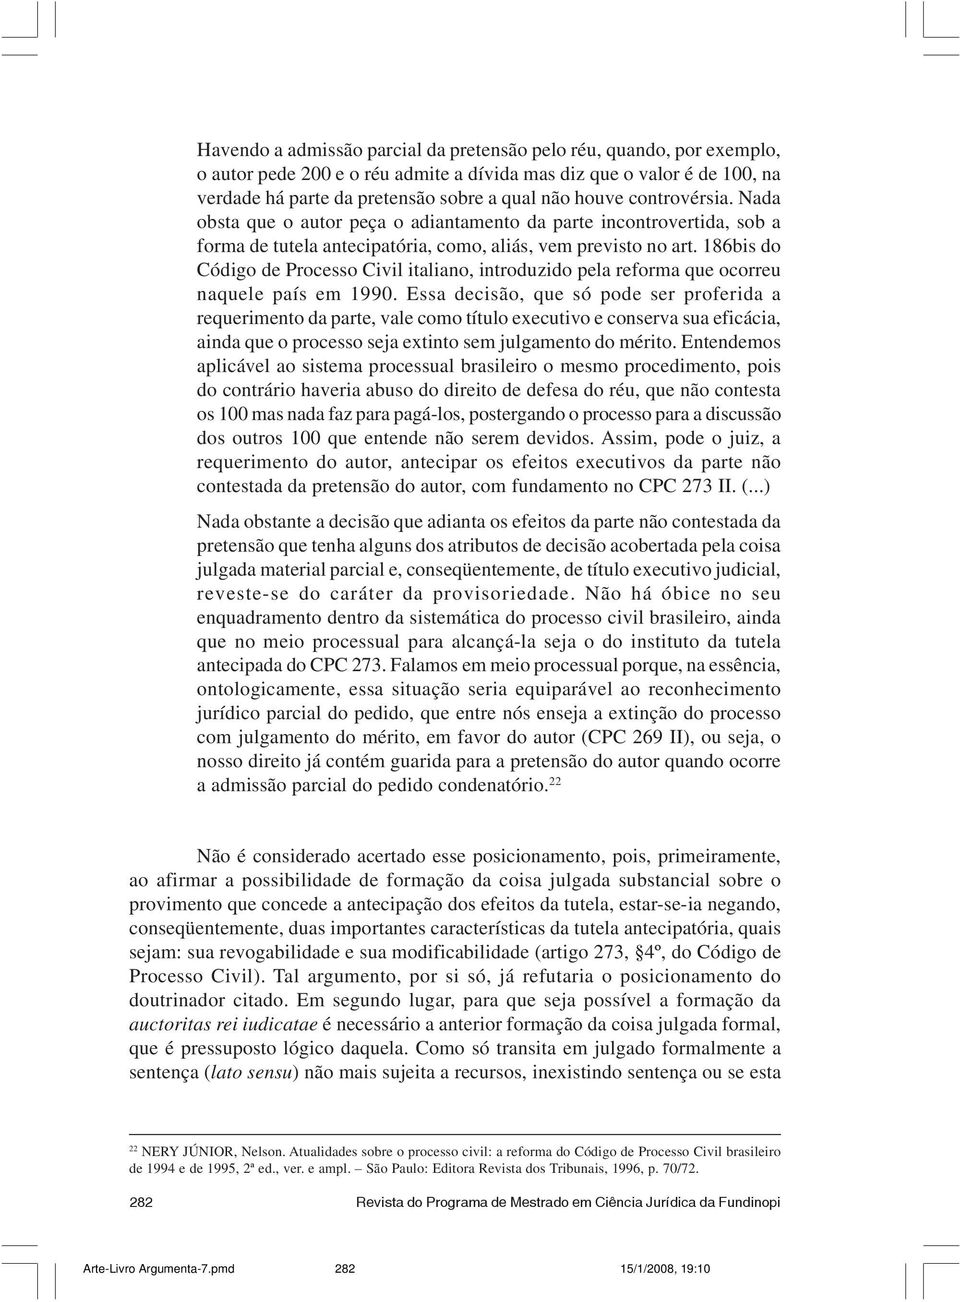 186bis do Código de Processo Civil italiano, introduzido pela reforma que ocorreu naquele país em 1990.